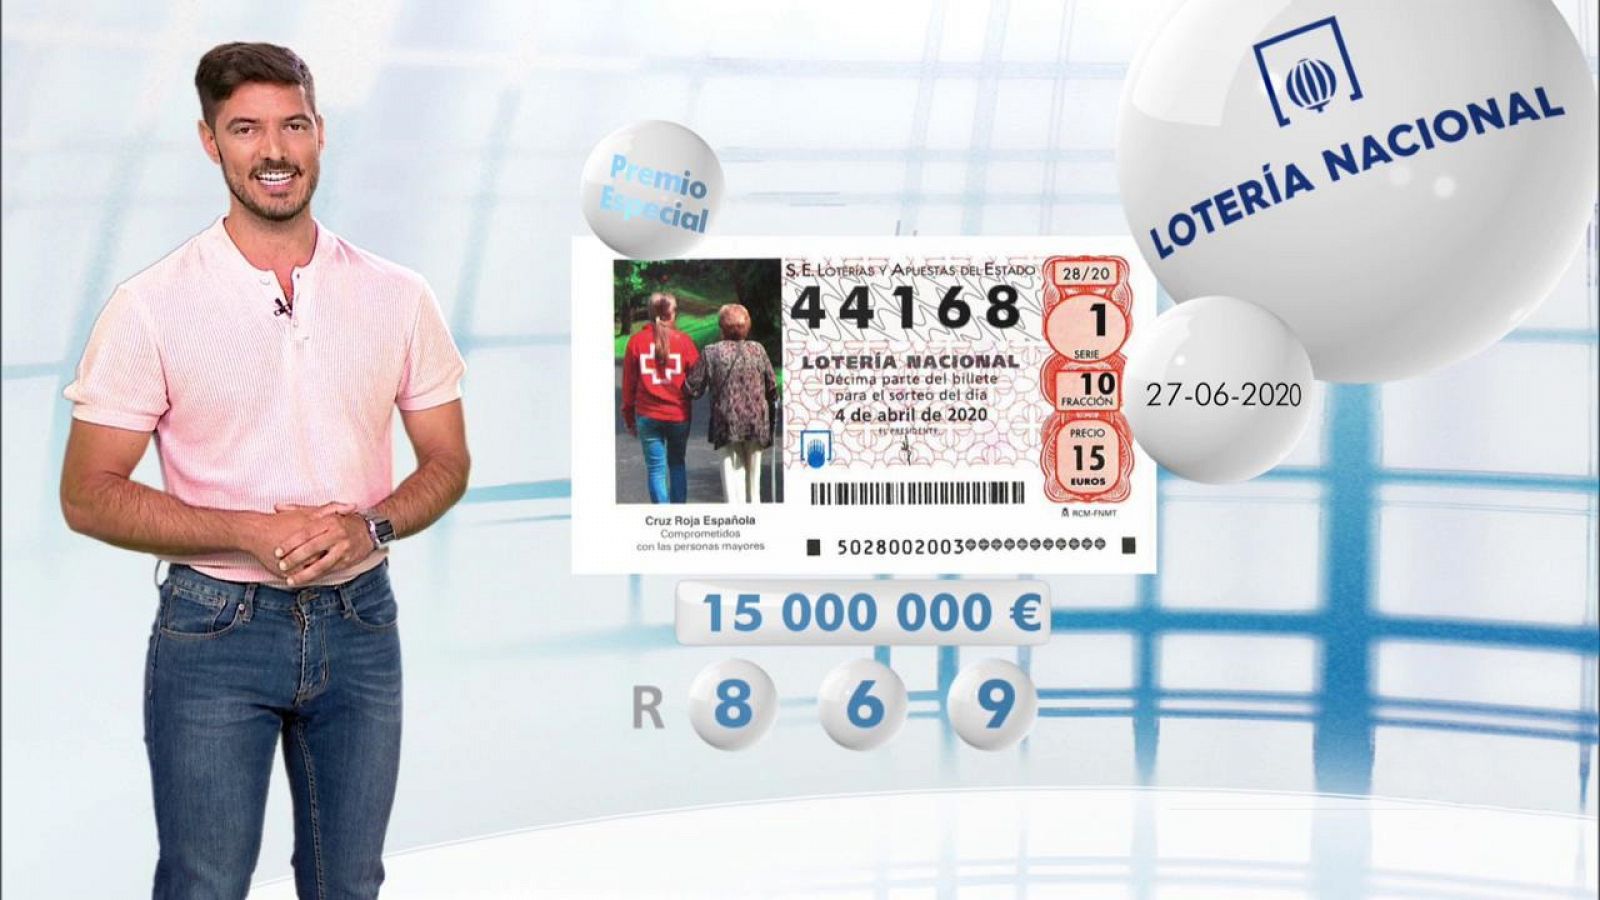 Lotería Nacional - 27/06/20 - RTVE.es